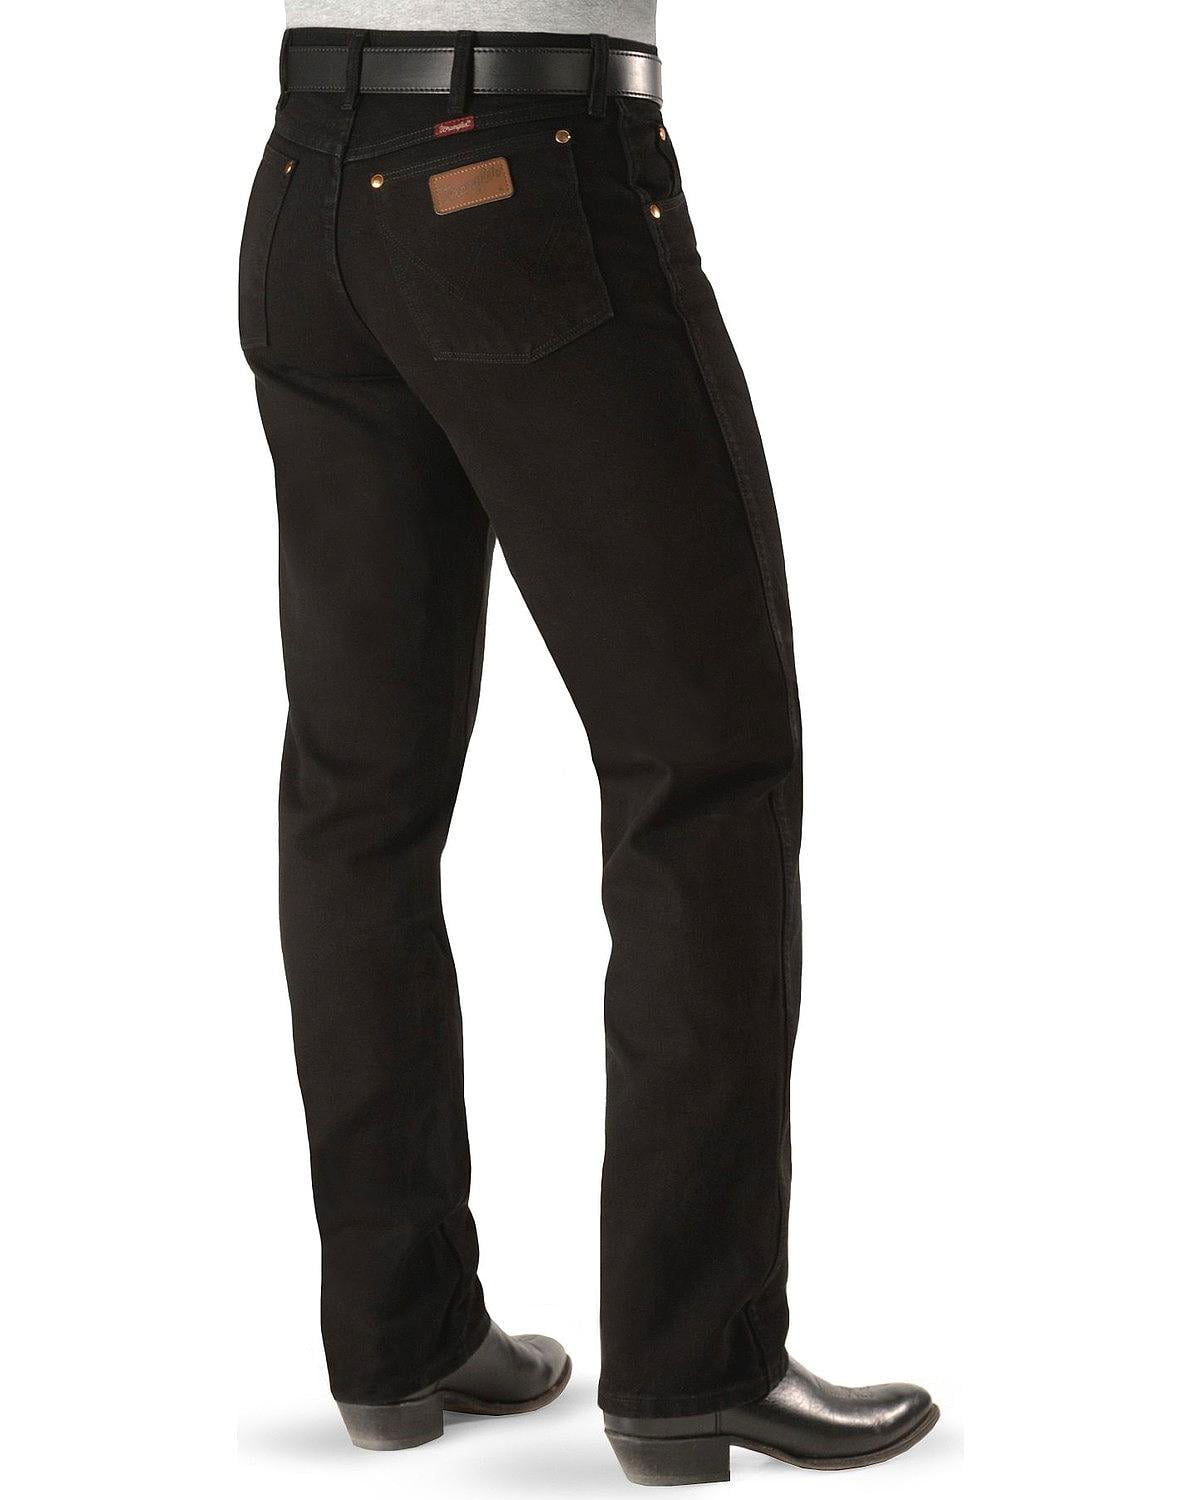 walmart black wrangler jeans